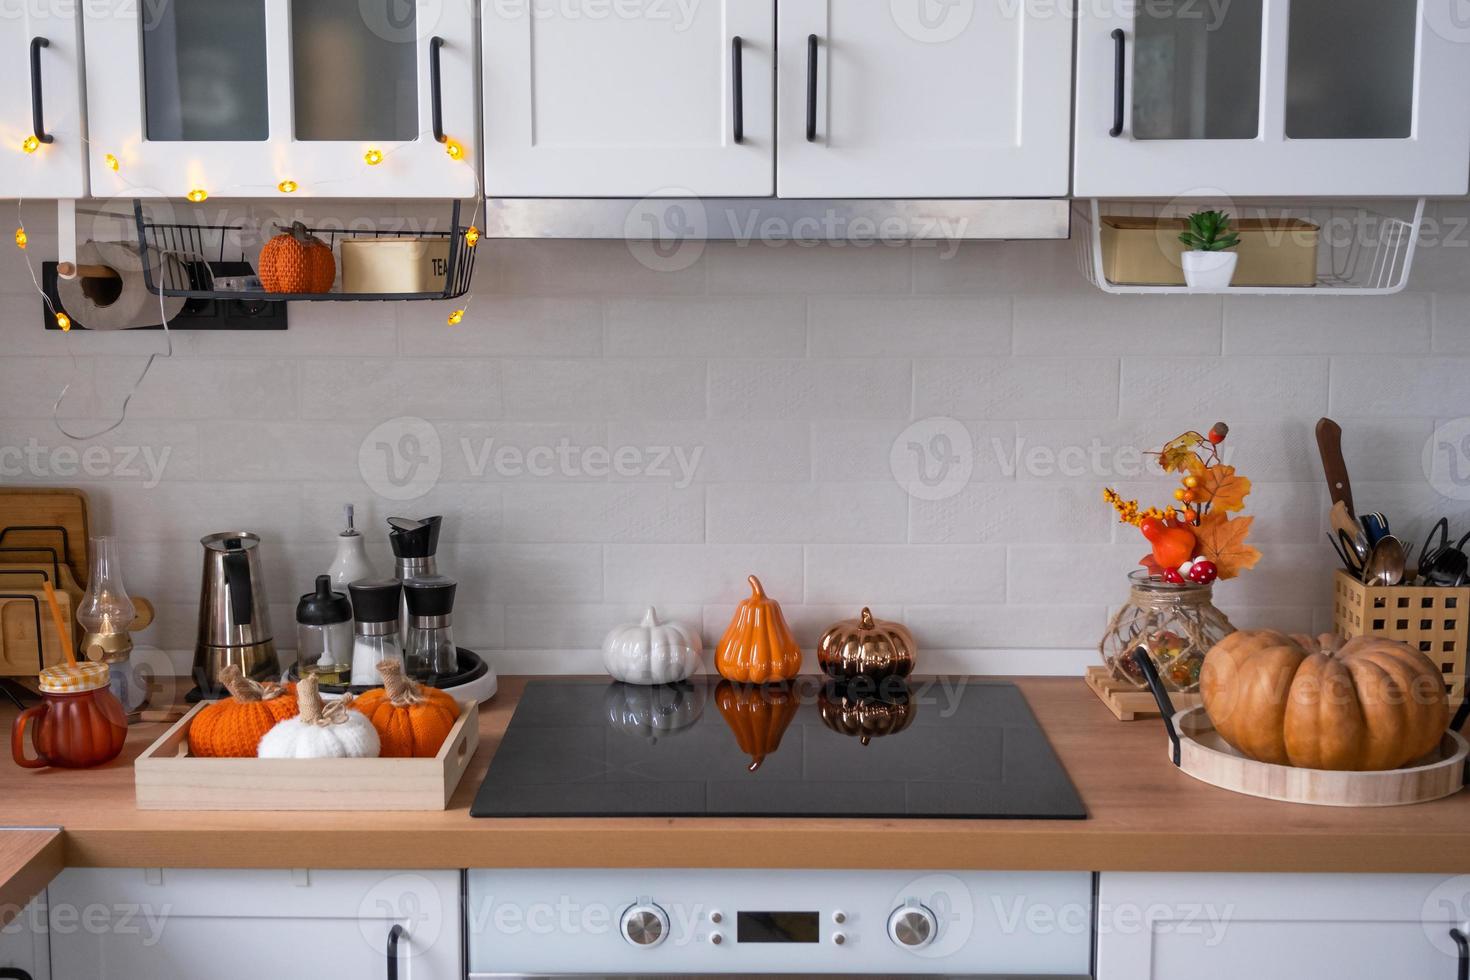 el interior de la cocina blanca de estilo escandinavo está decorado con calabazas para halloween. estado de ánimo otoñal, decoración del hogar para las vacaciones foto